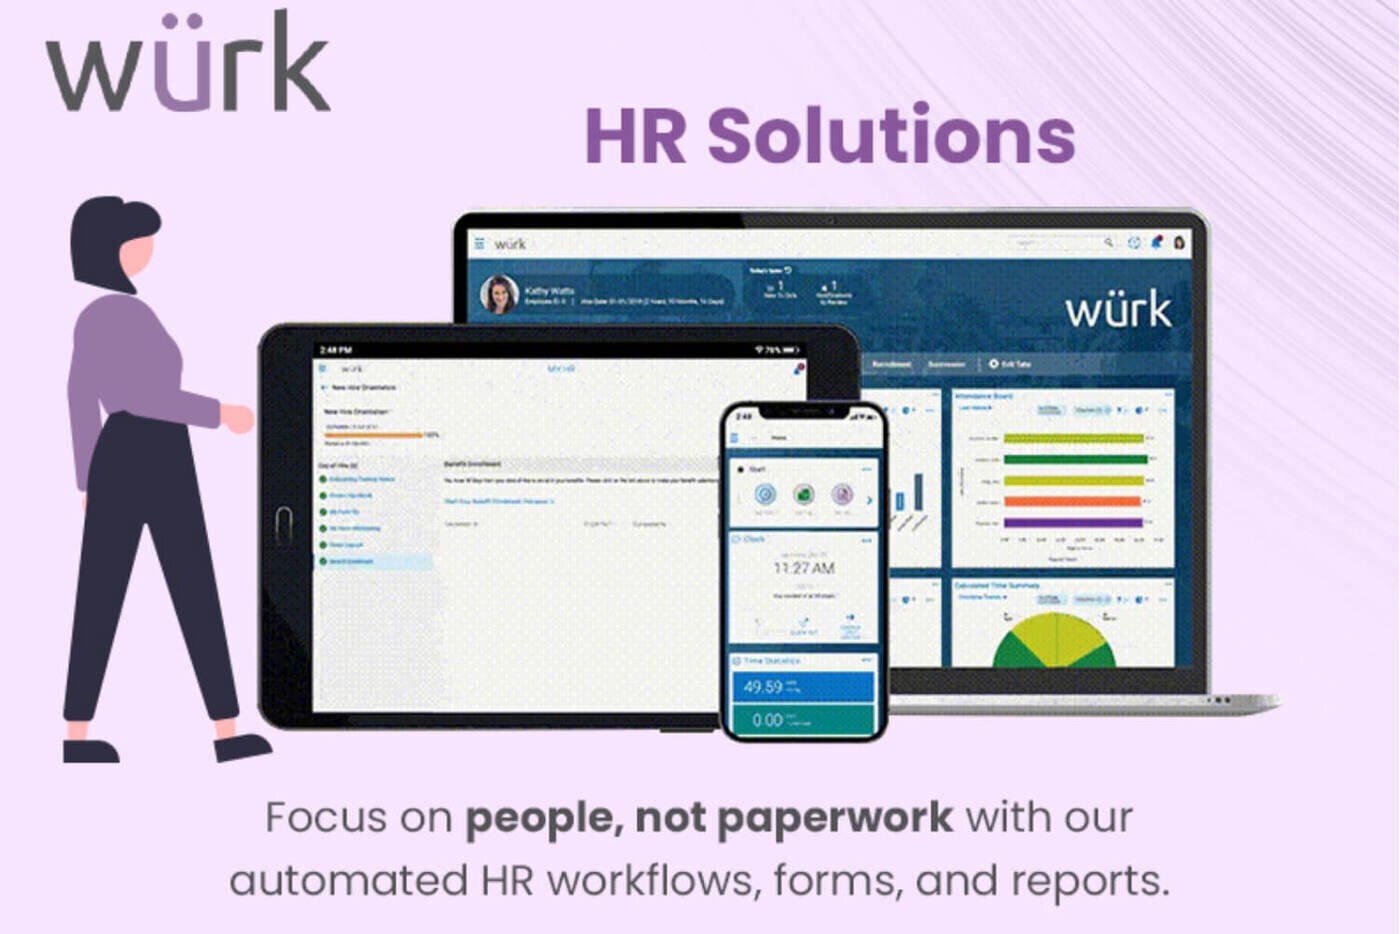 Wurk HR solutions